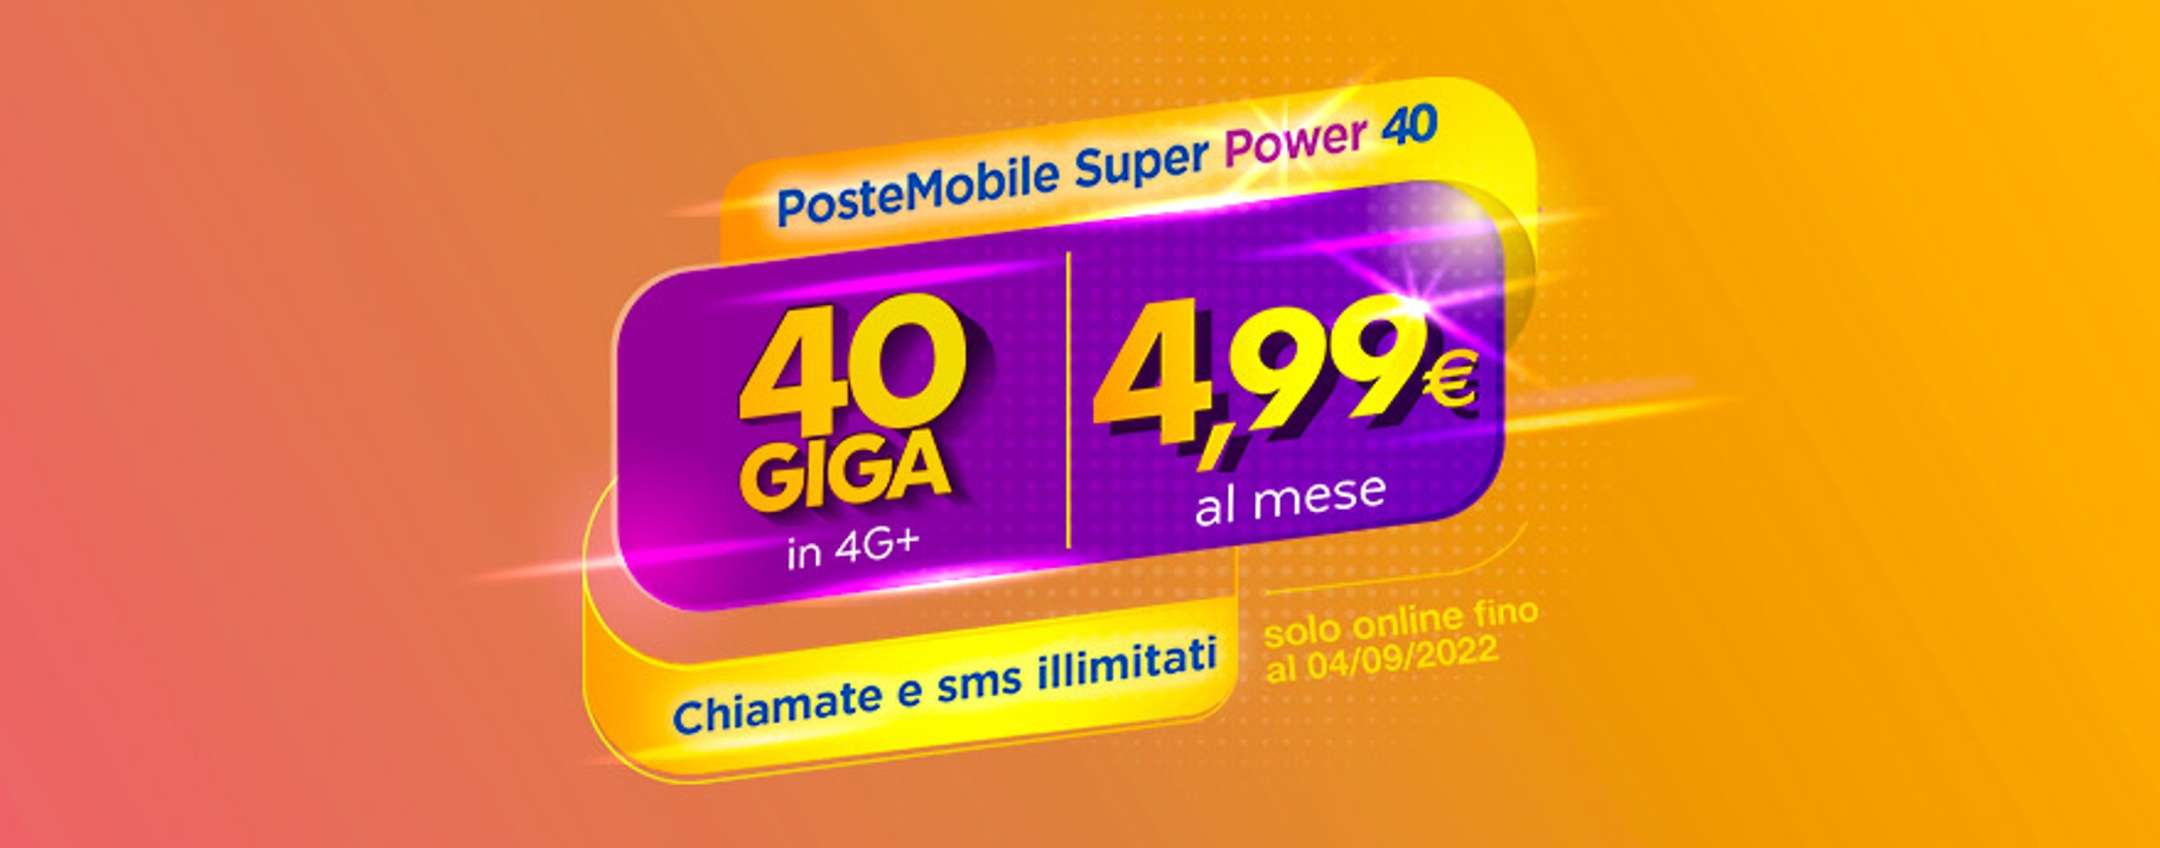 PosteMobile: PROMO Super Power 40 con 40GB a 4,99€